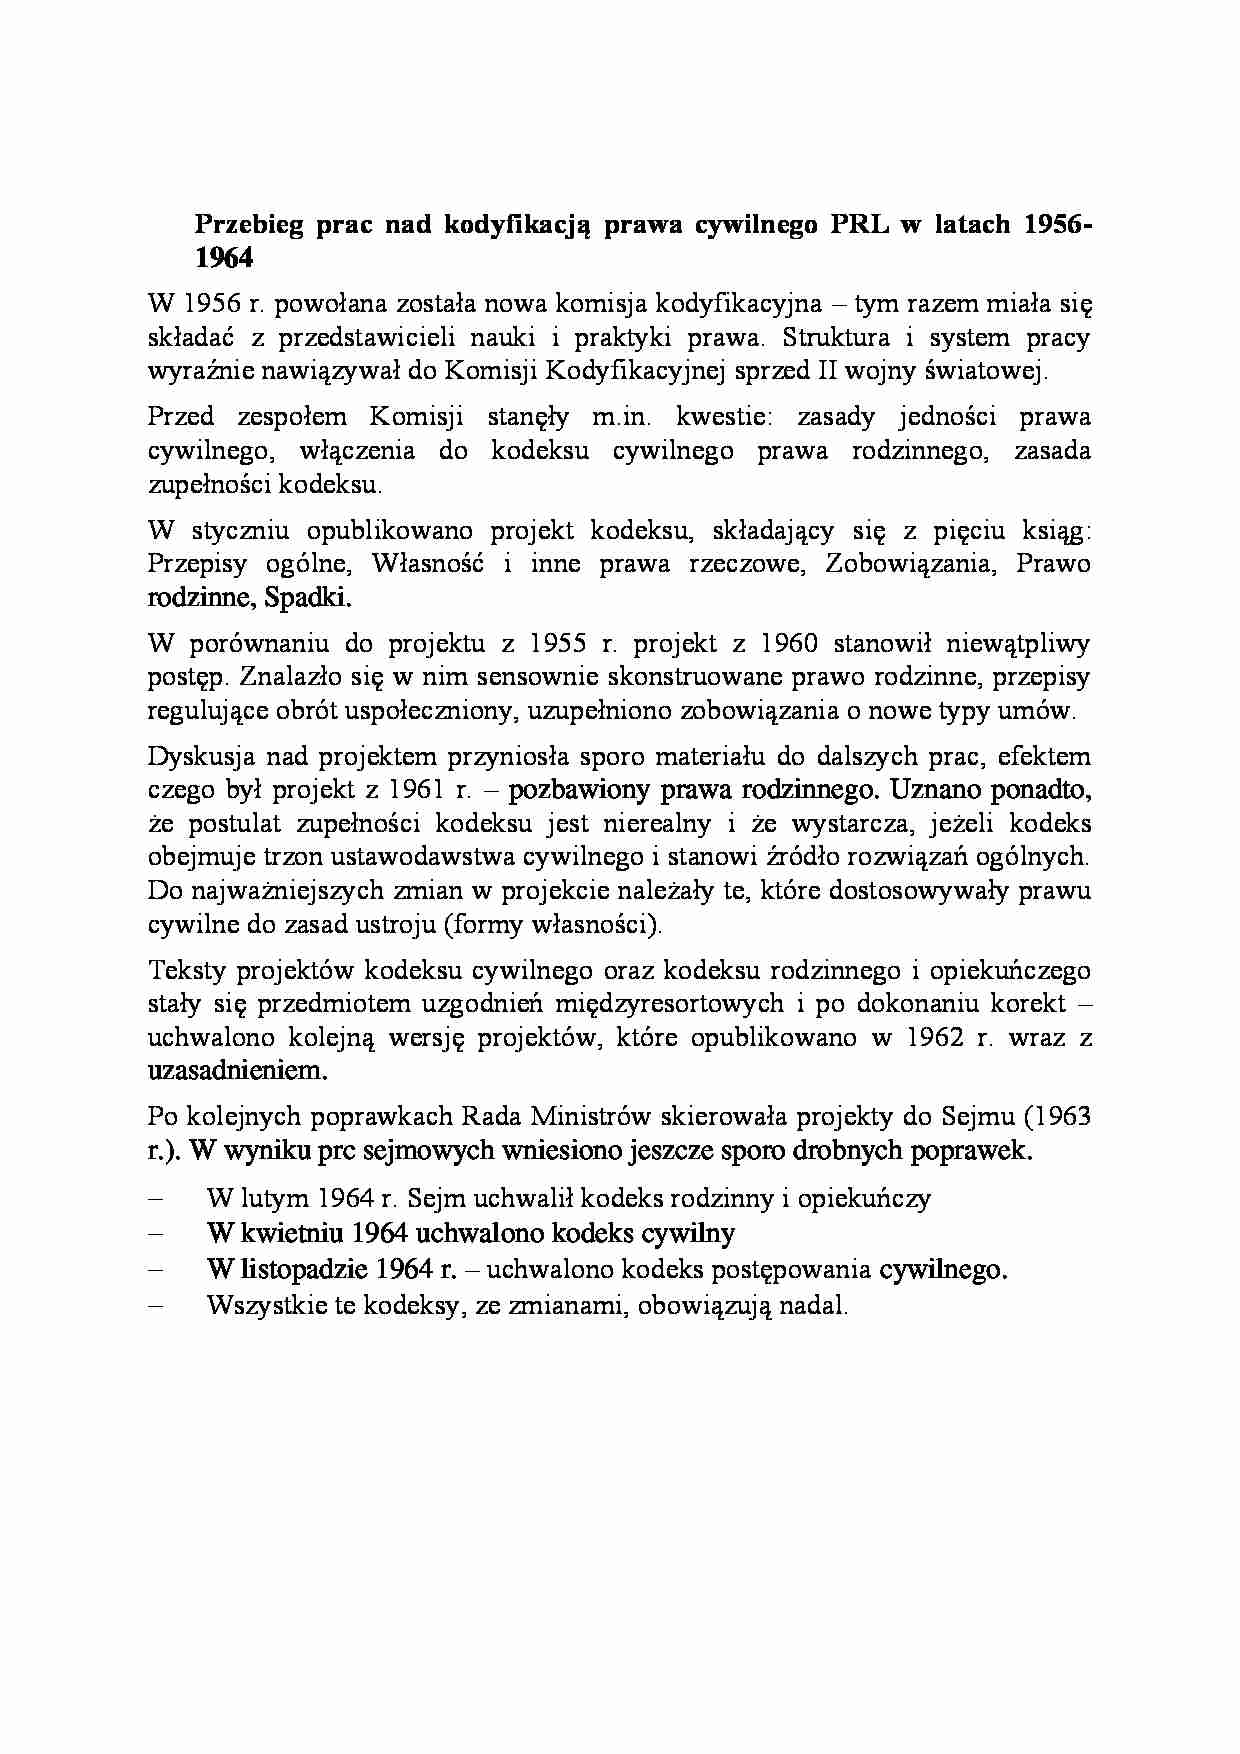 Przebieg prac nad kodyfikacją prawa cywilnego PRL w latach 1956-1964-opracowanie - strona 1